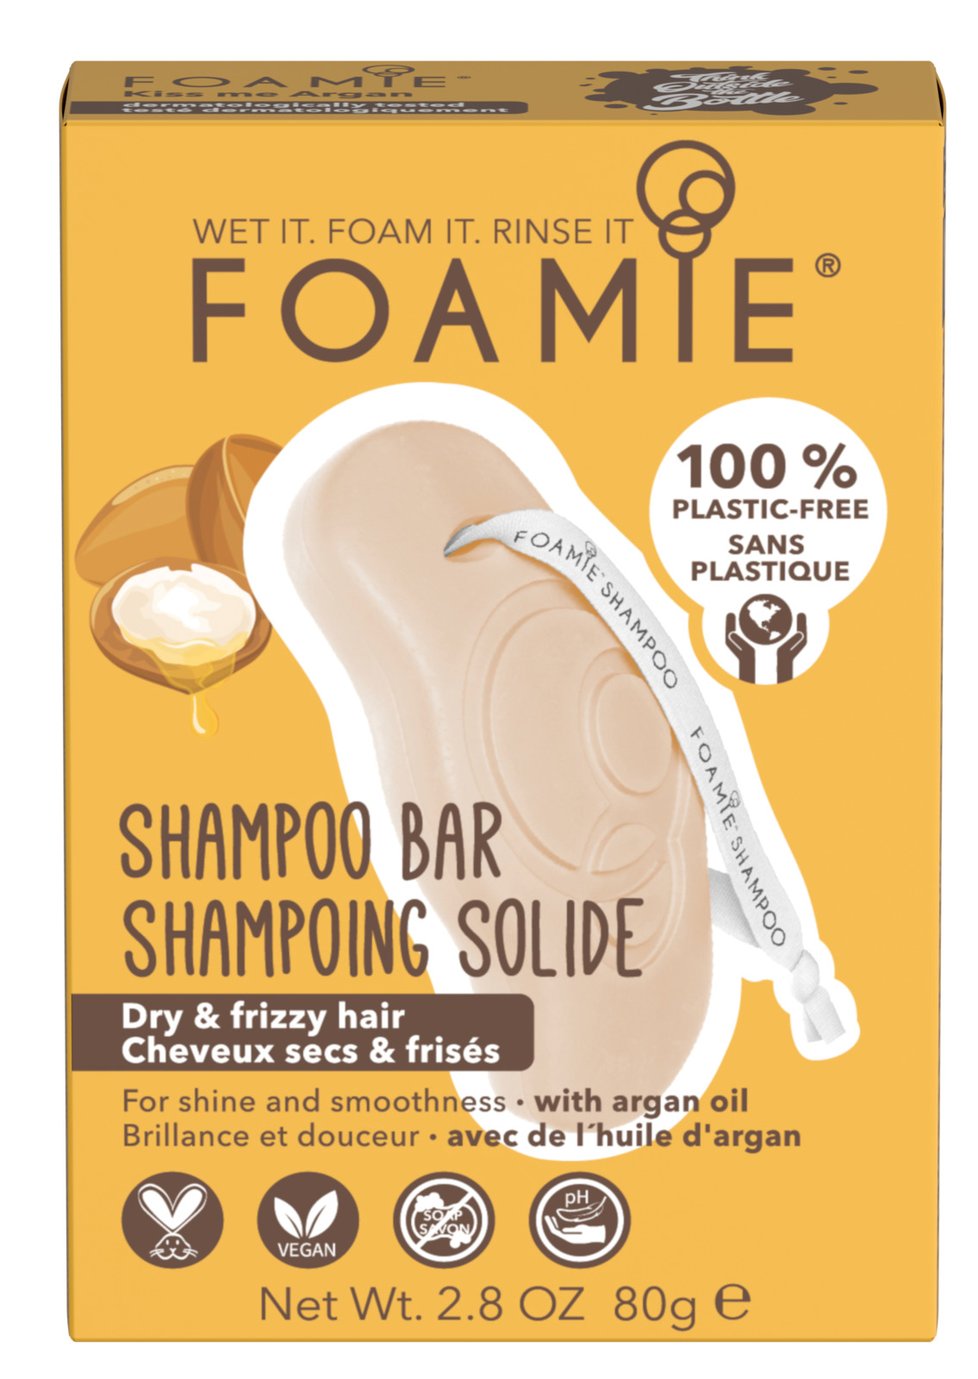 Tuhý šampon Foamie, 129 Kč